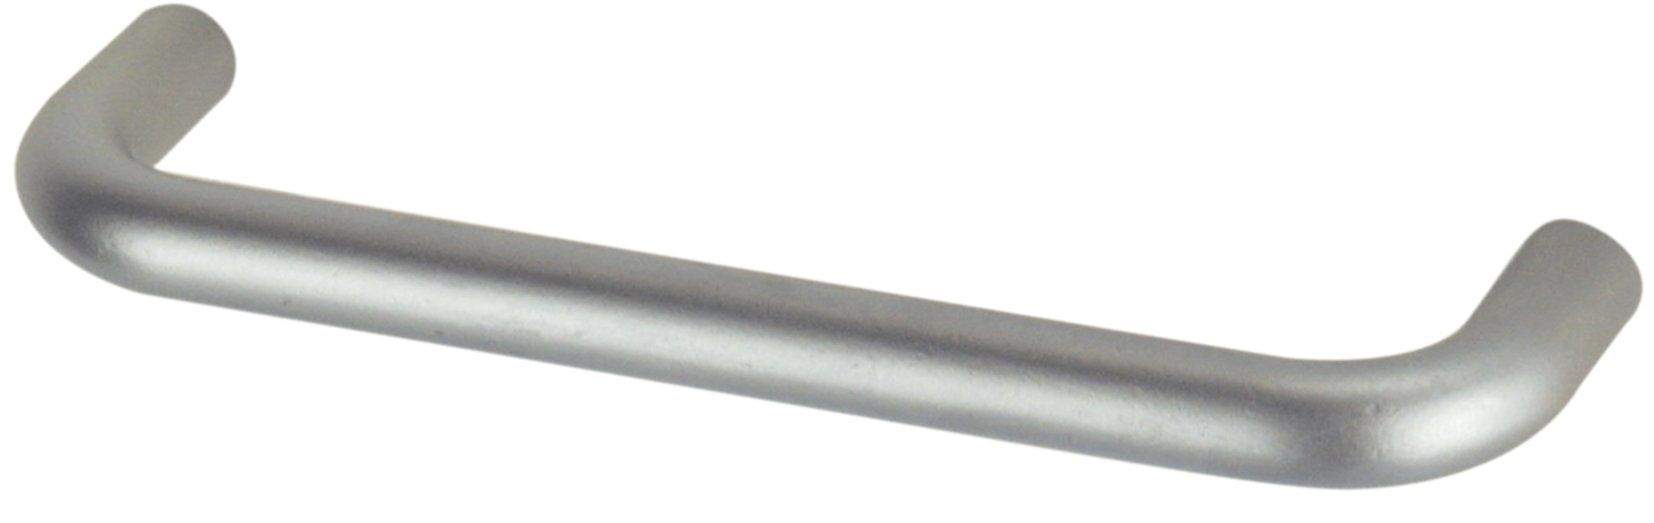 Mango de alambre con inserto de acero cromado, ancho 136 mm, profundidad 8 mm, profundidad 28 mm, centros 128 mm, 1 pieza con to